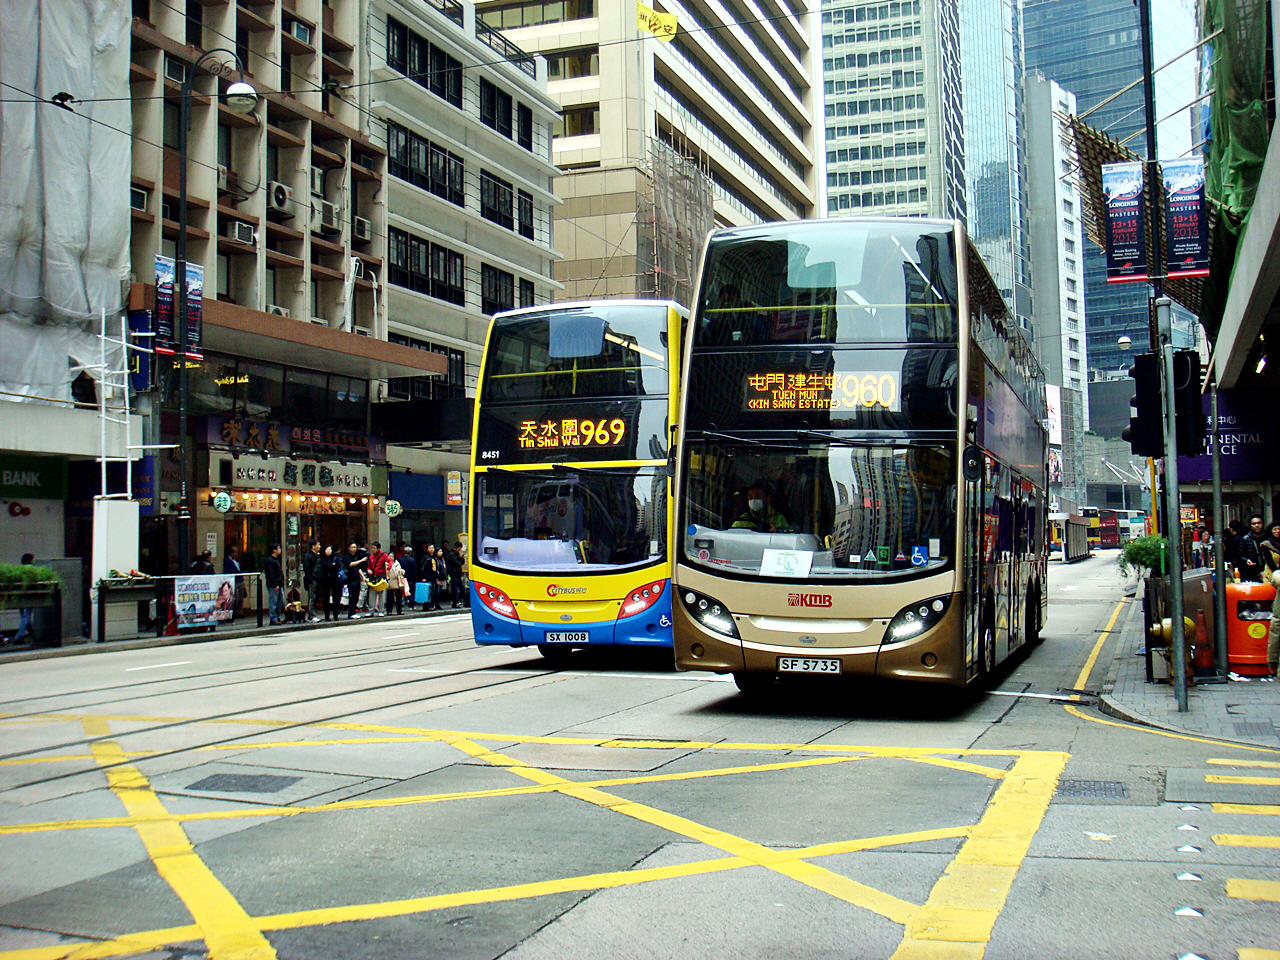 홍콩 시내교통에서 큰 역할을 하고 있는 2층 저상버스